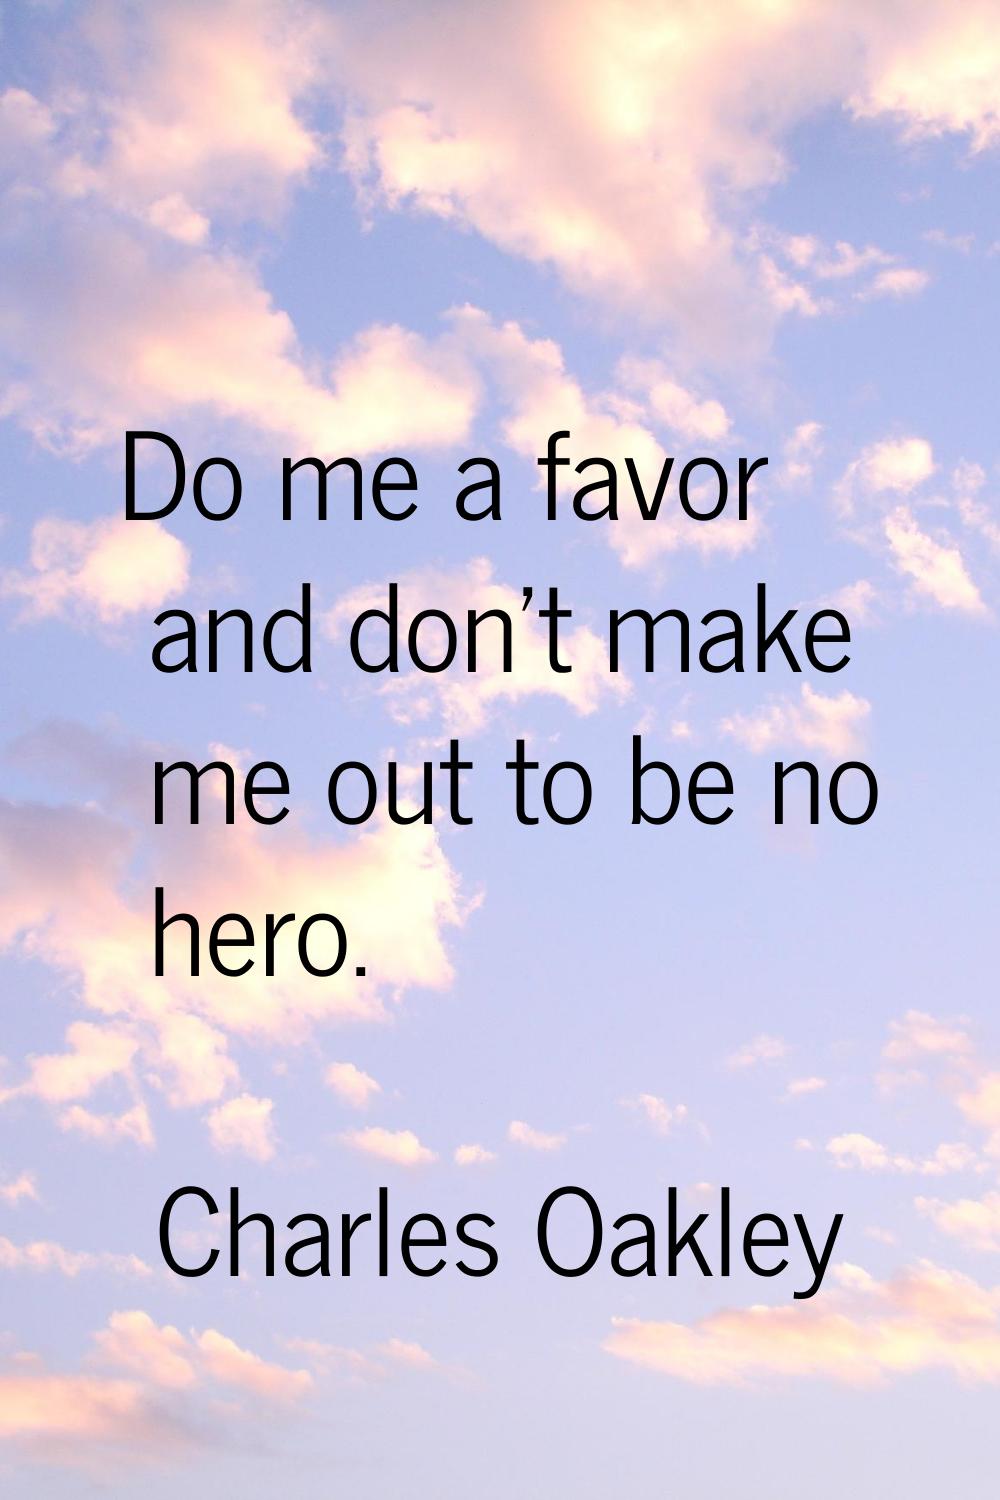 Do me a favor and don't make me out to be no hero.